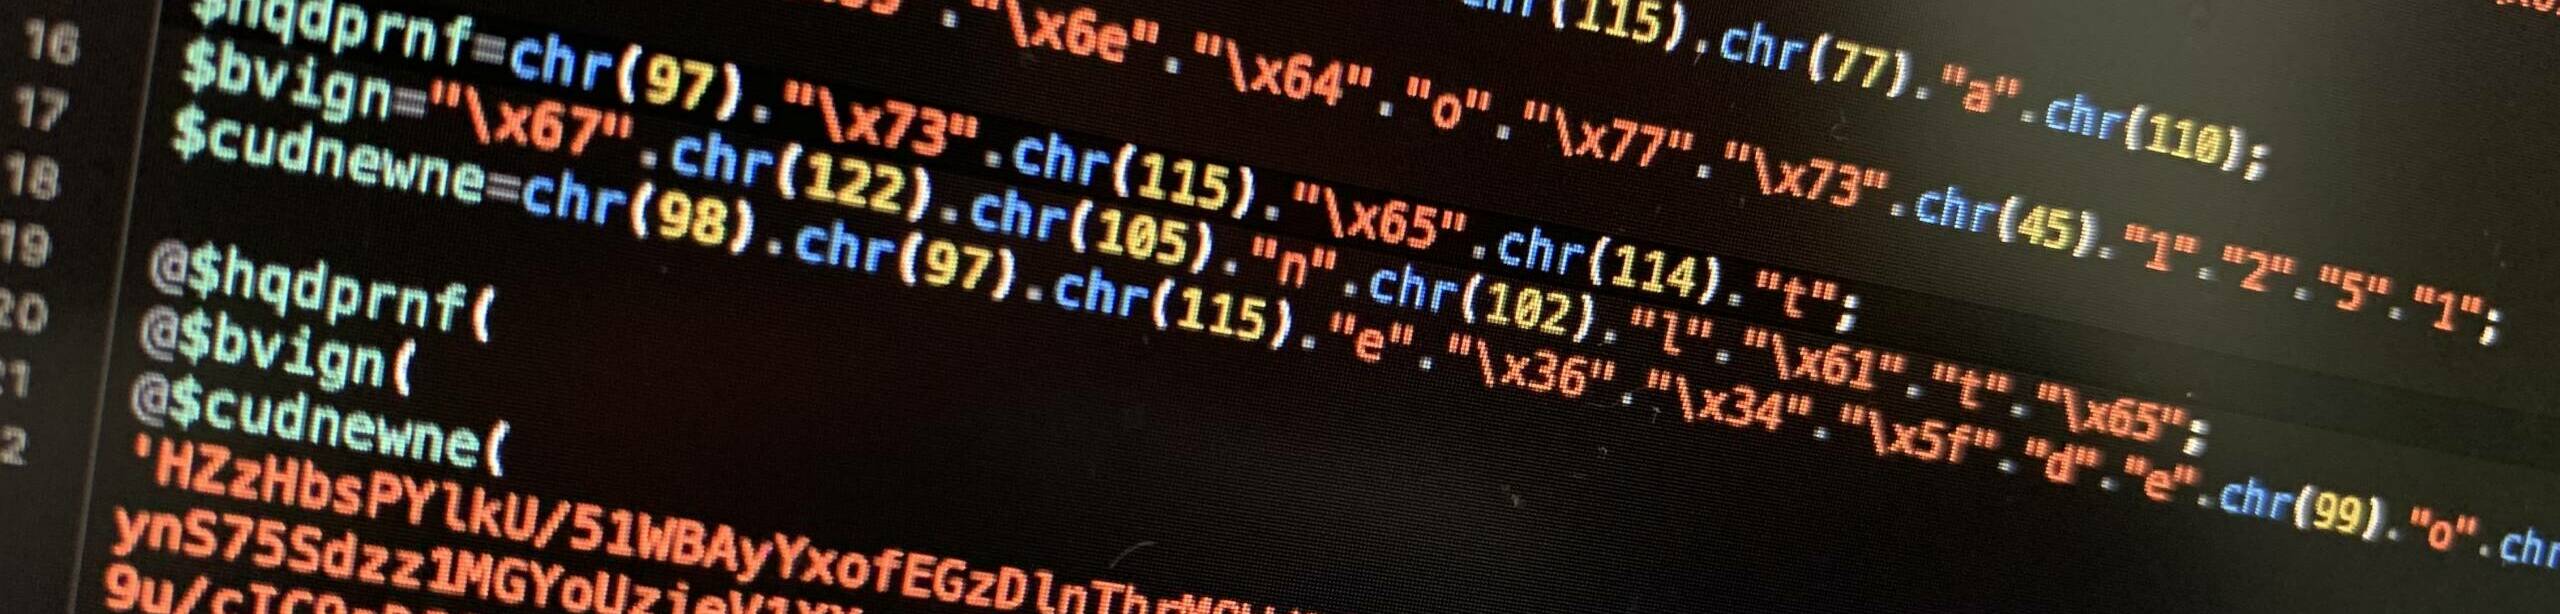 Code-Teil einer gehackten Website